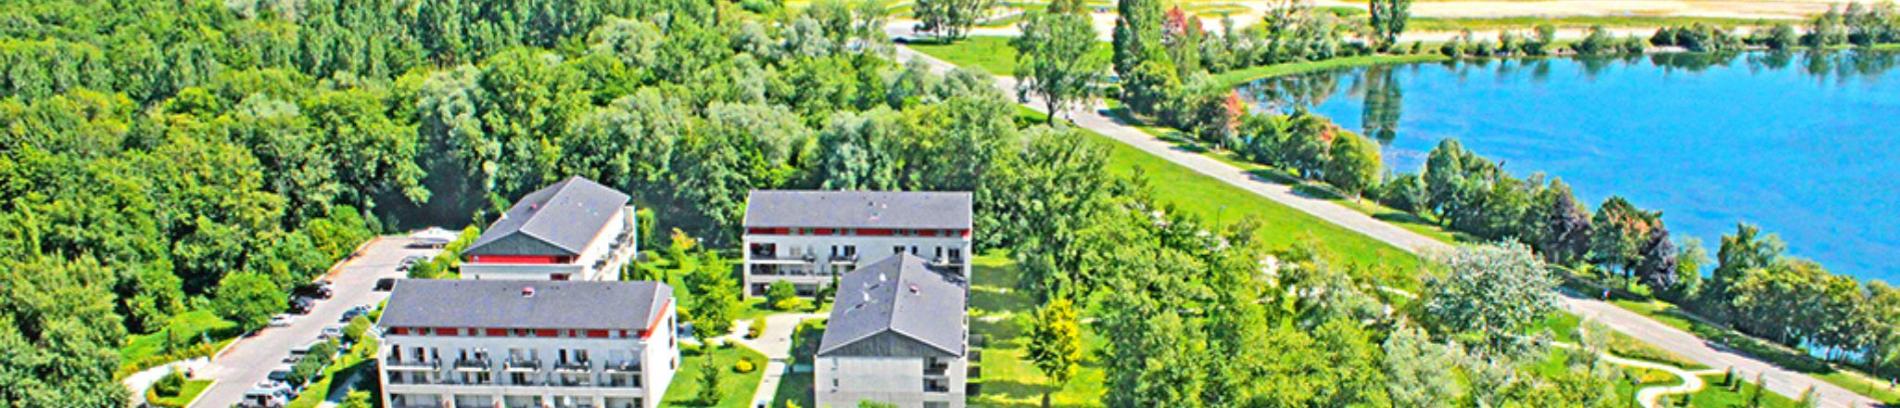 Slide Résidence Villa du Lac -Divonne les Bains